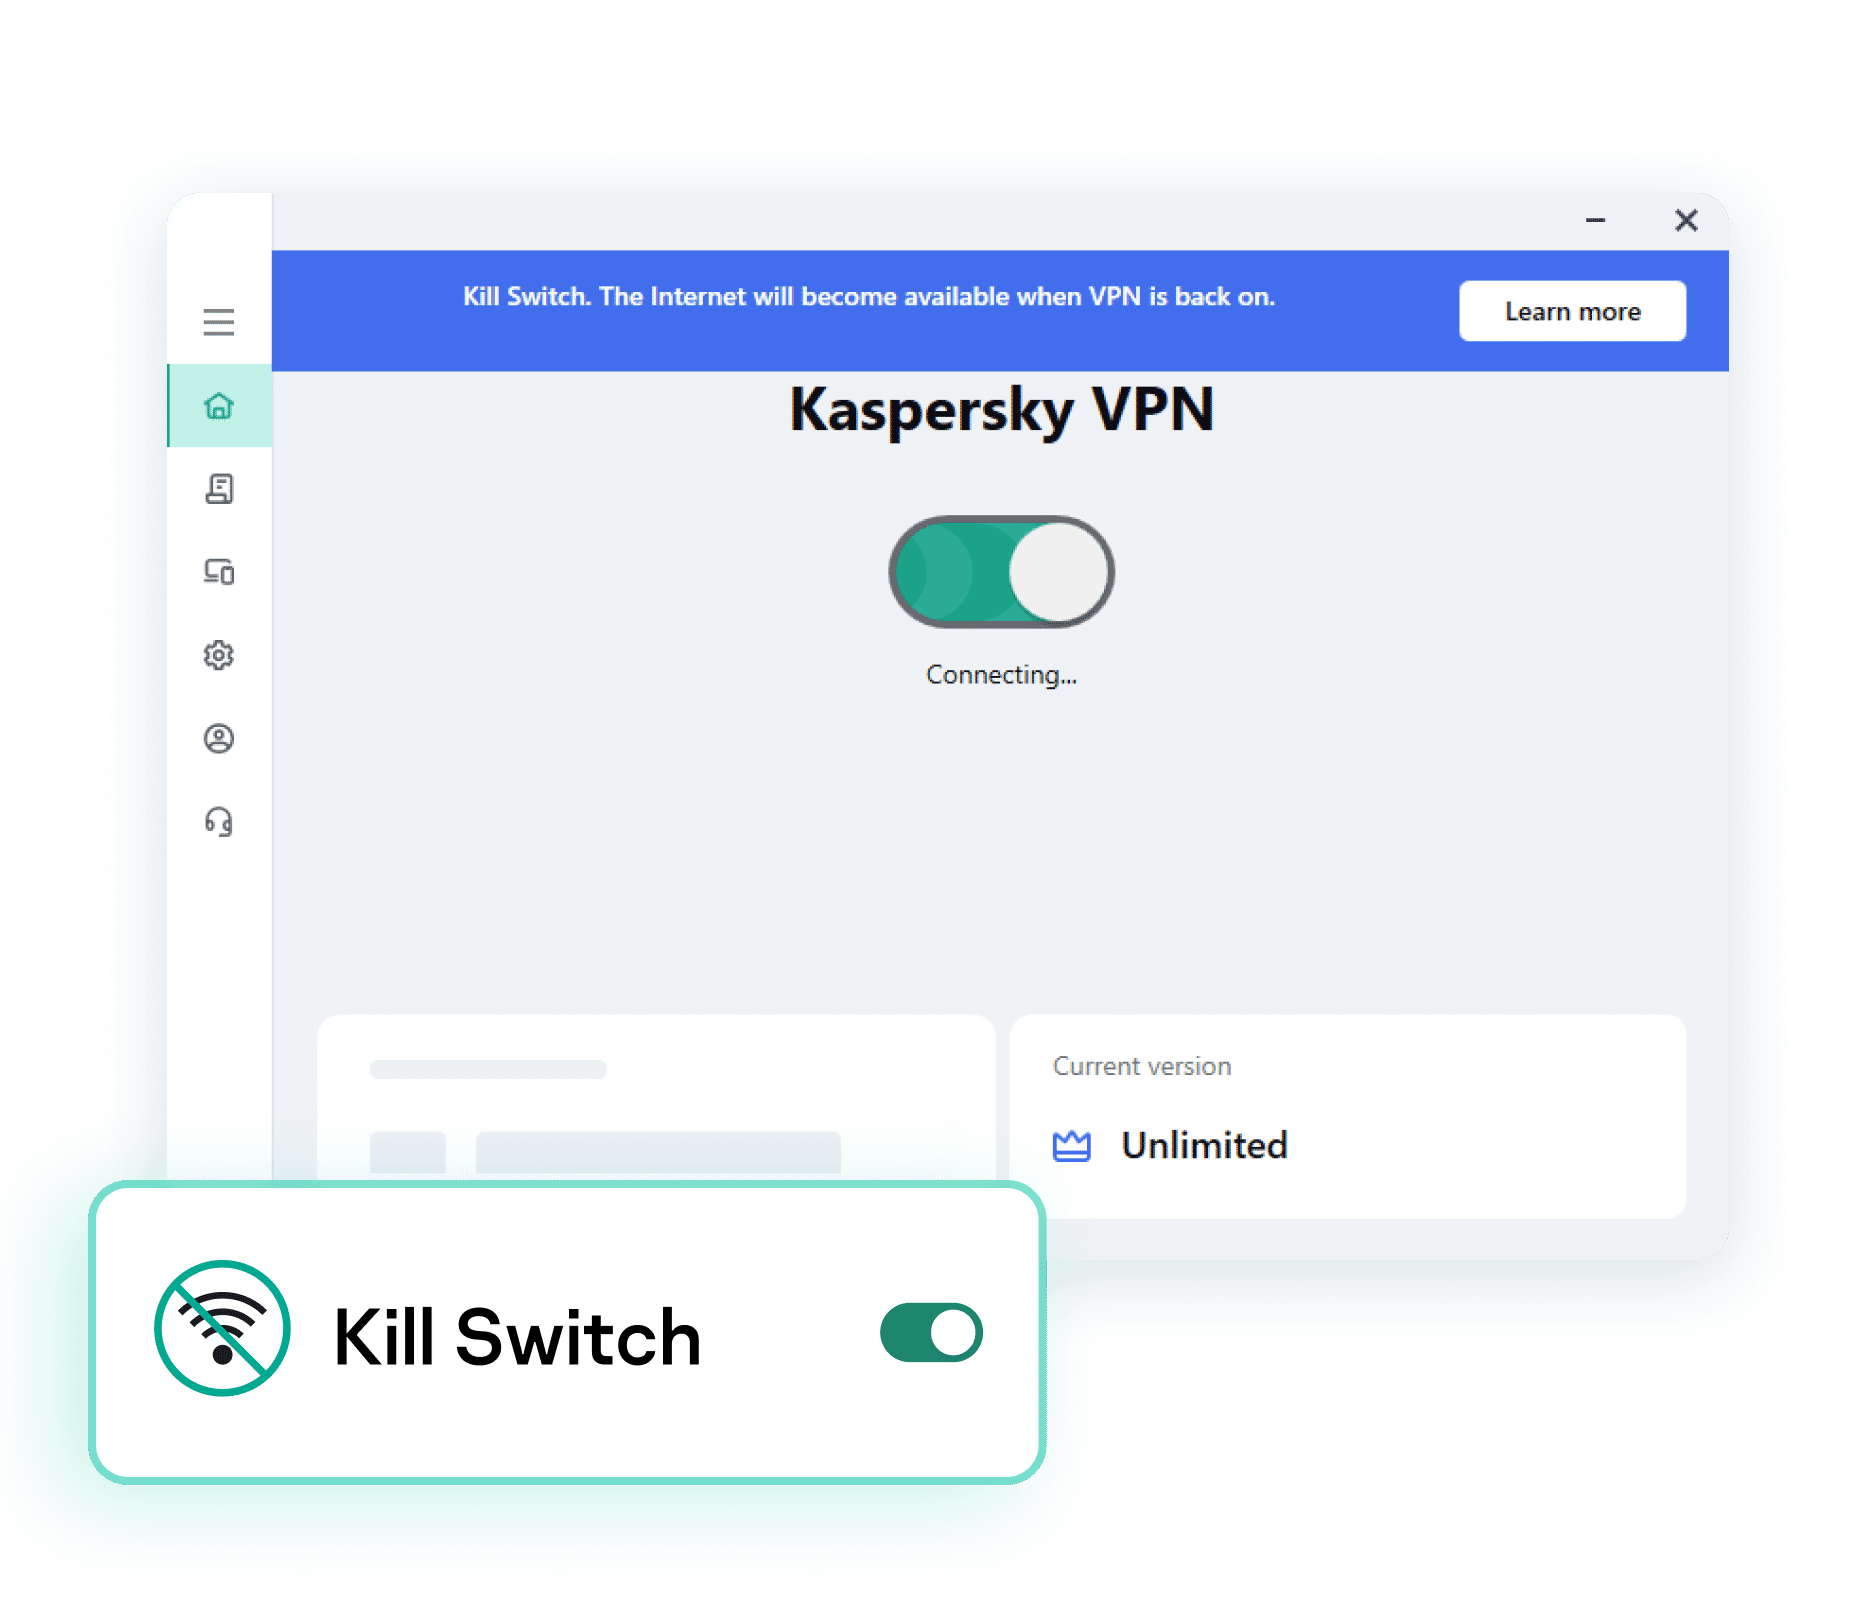 Does Kaspersky VPN have a kill switch?